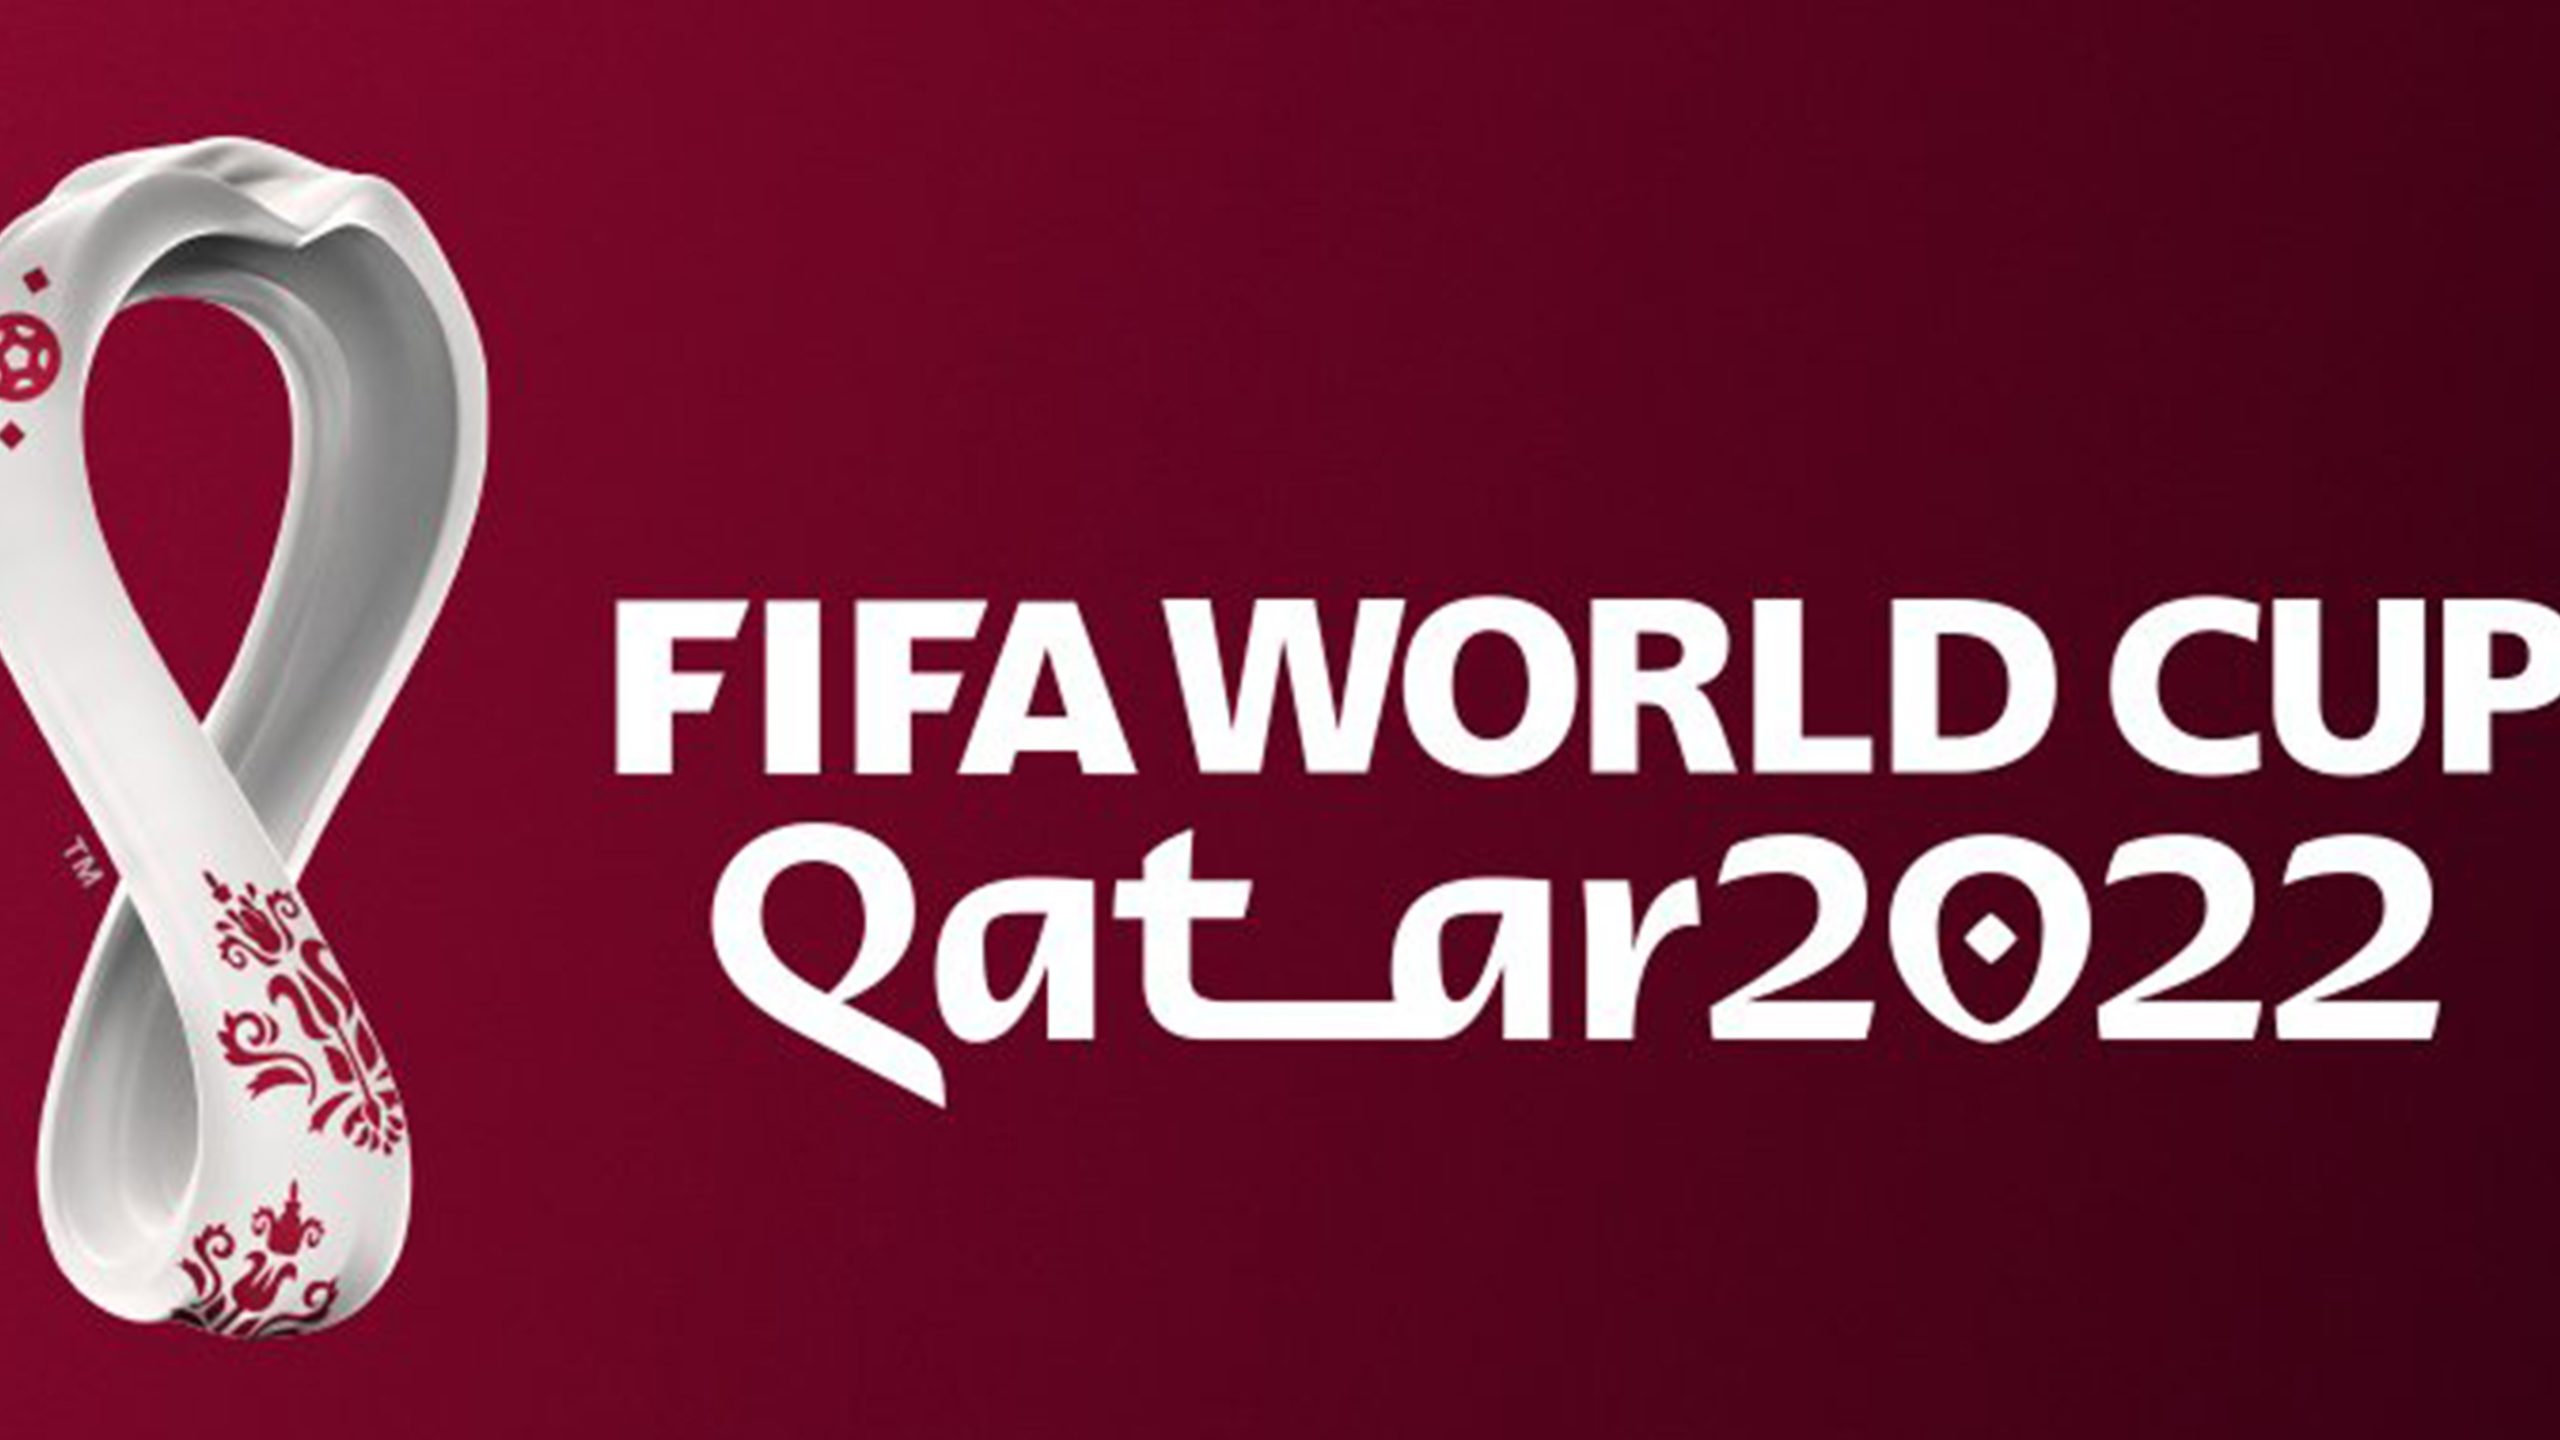 GazetaWeb - Com quatro jogos por dia, Fifa divulga desenho da tabela da Copa  do Mundo 2022